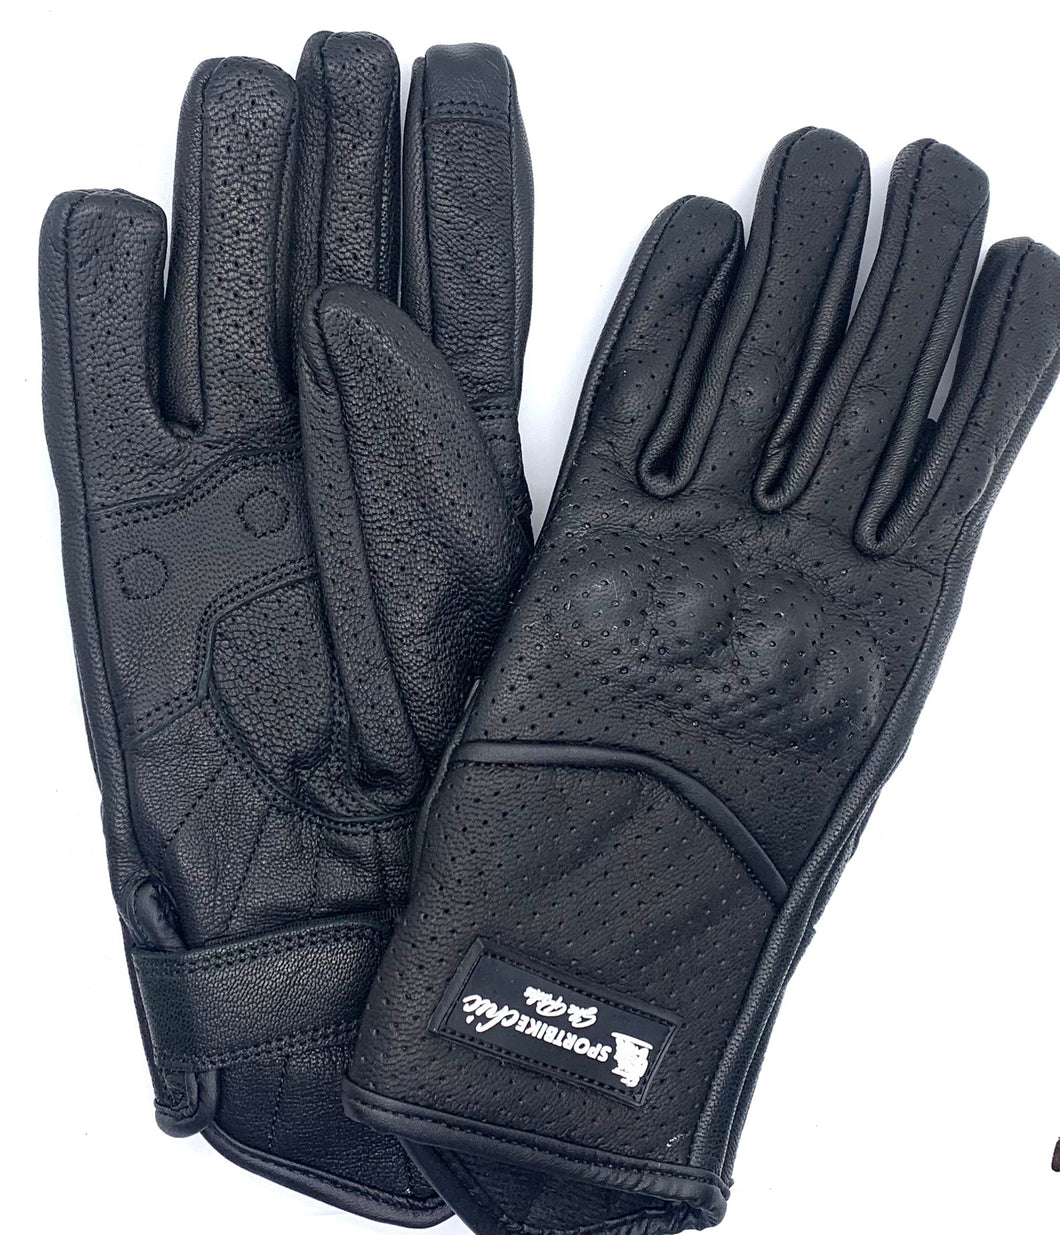 Black Extended Wrist gloves